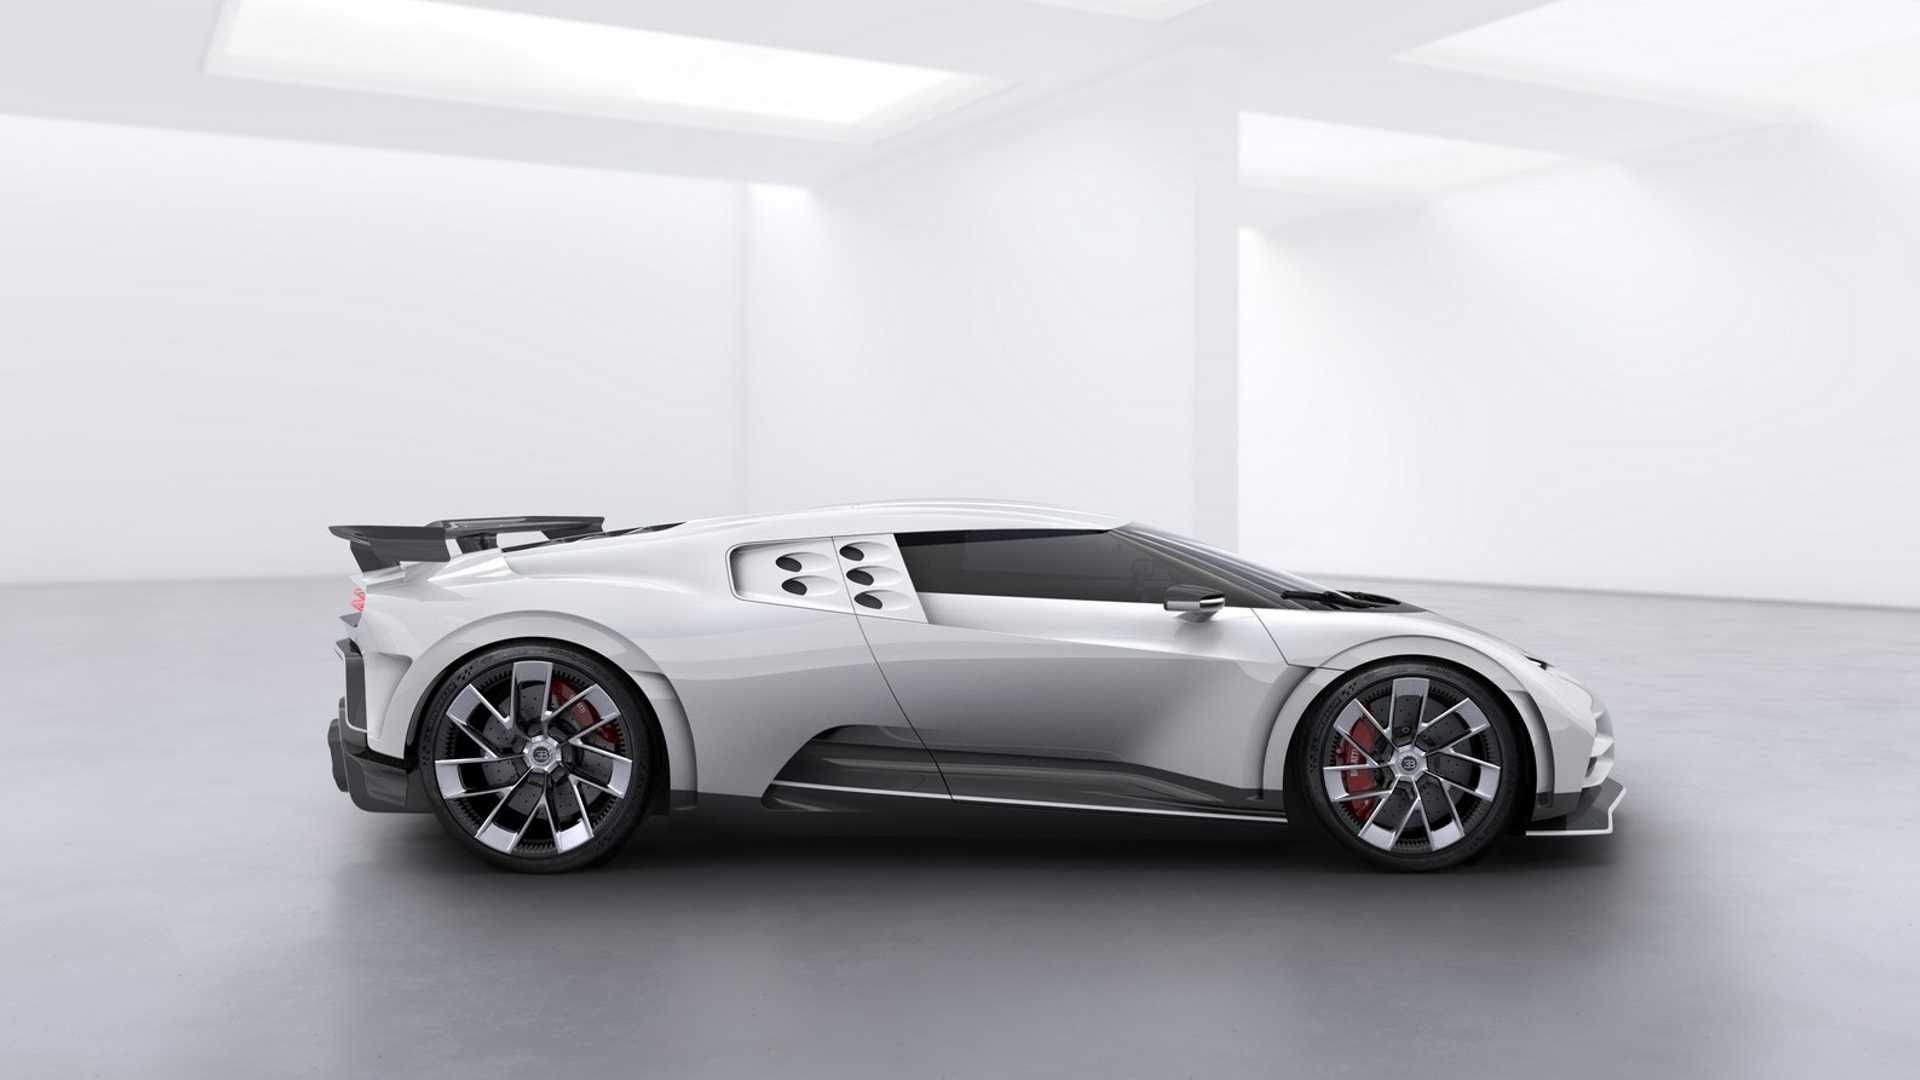 مرجع متخصصين ايران نماي جانبي ابرخودرو بوگاتي سنتودايچي / Bugatti Centodieci hypercar سفيد رنگ